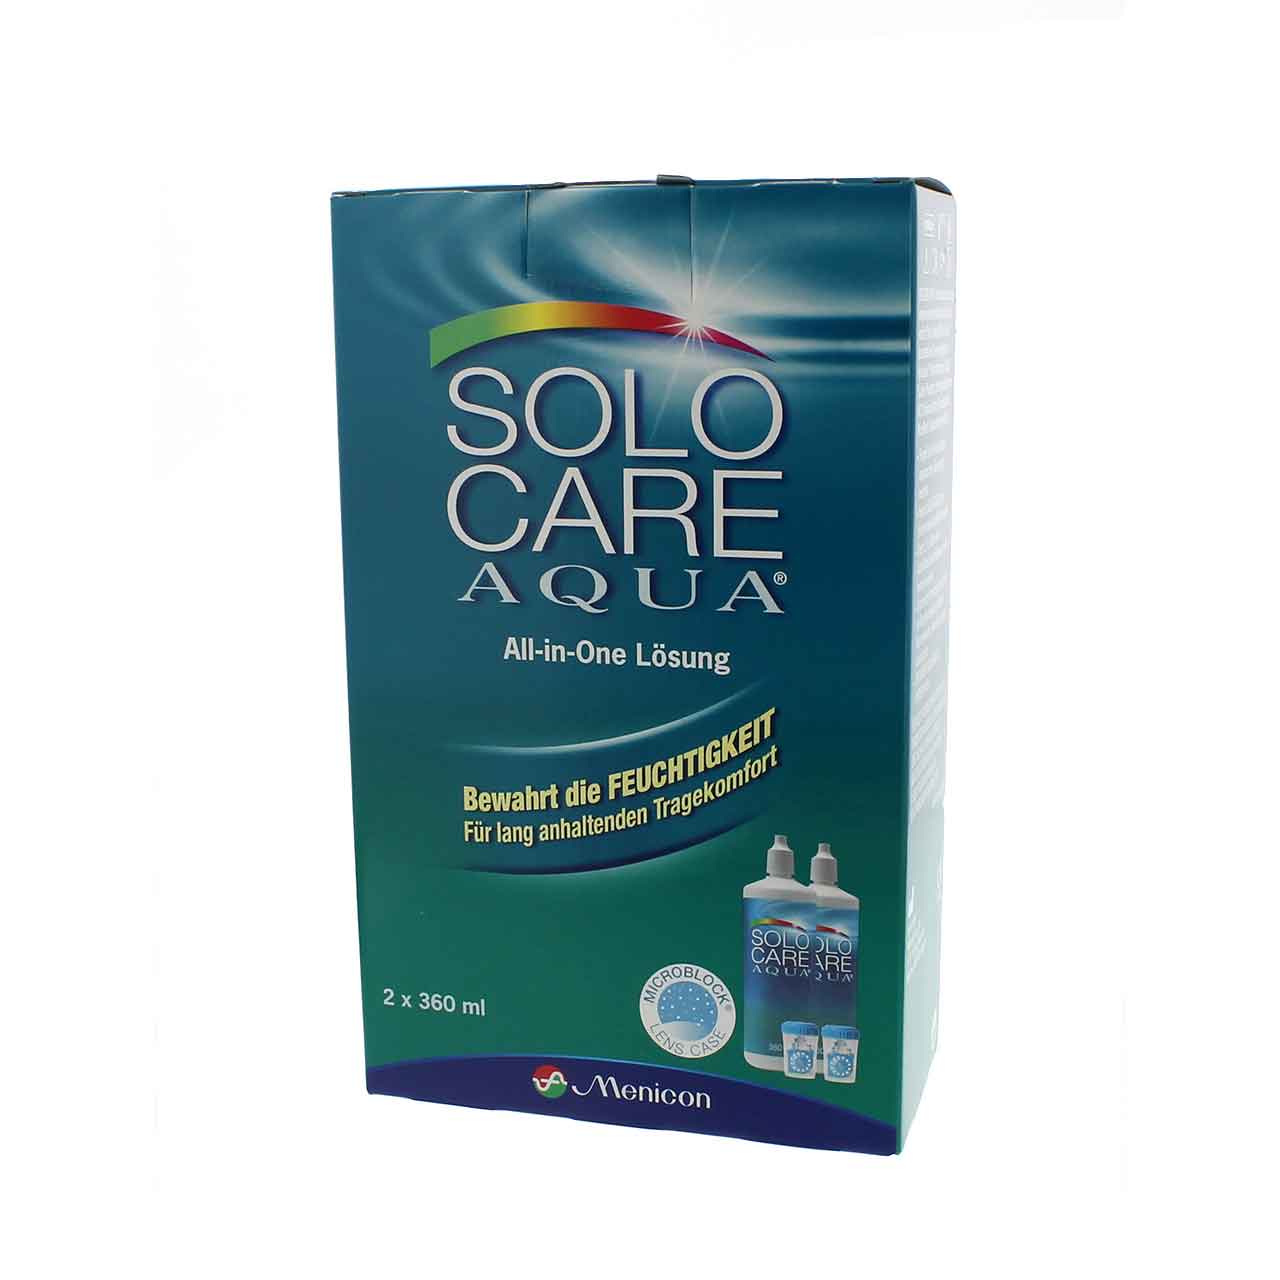 Solocare Aqua 2x 360ml All-in-One Lösung (Ablaufdatum 08/2023 !!)